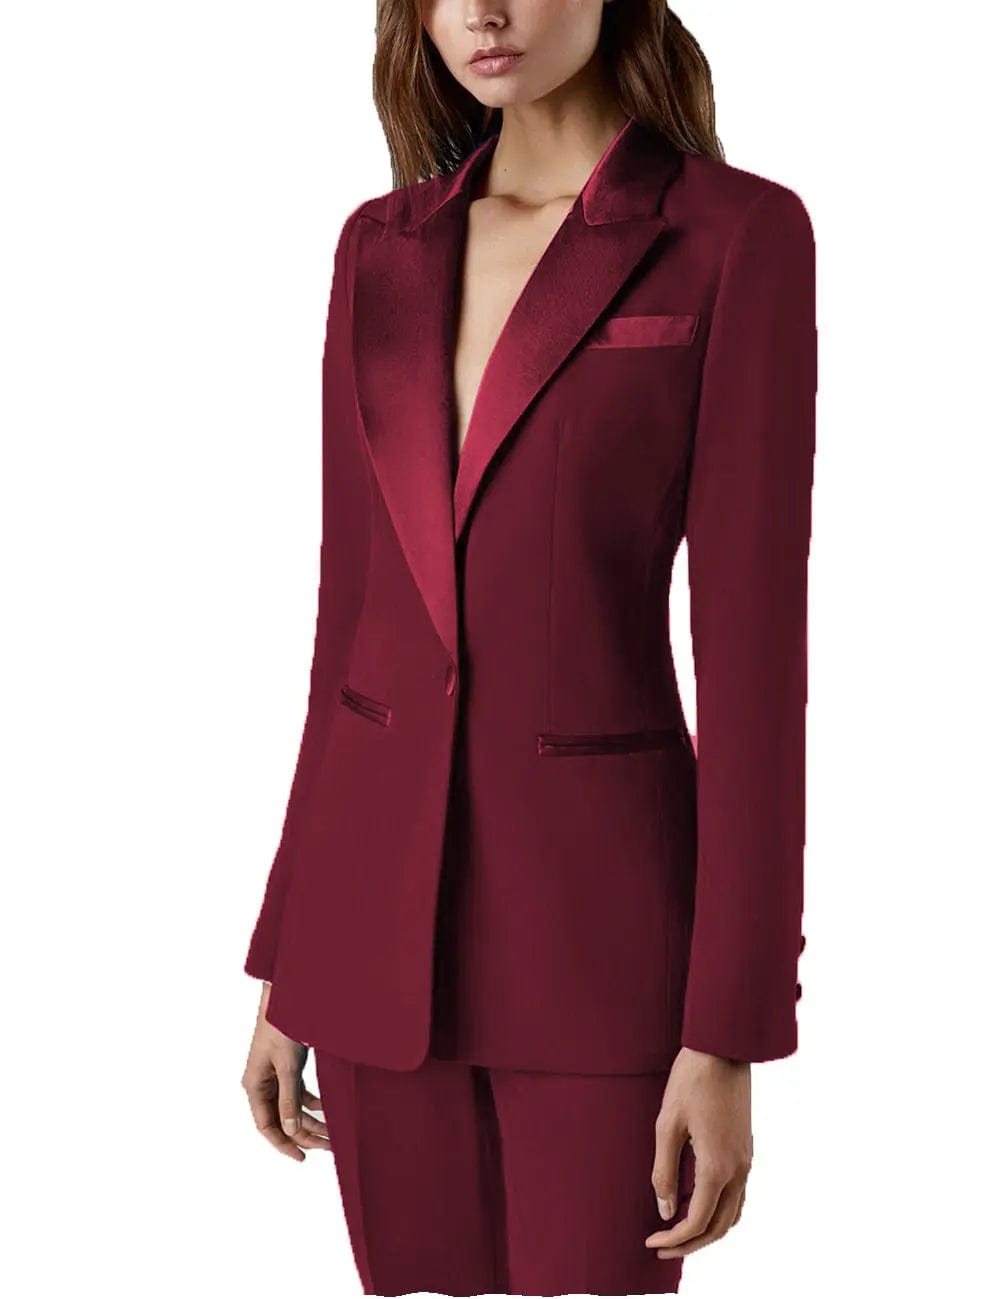 Burgundy Suit Women | ShopStyle